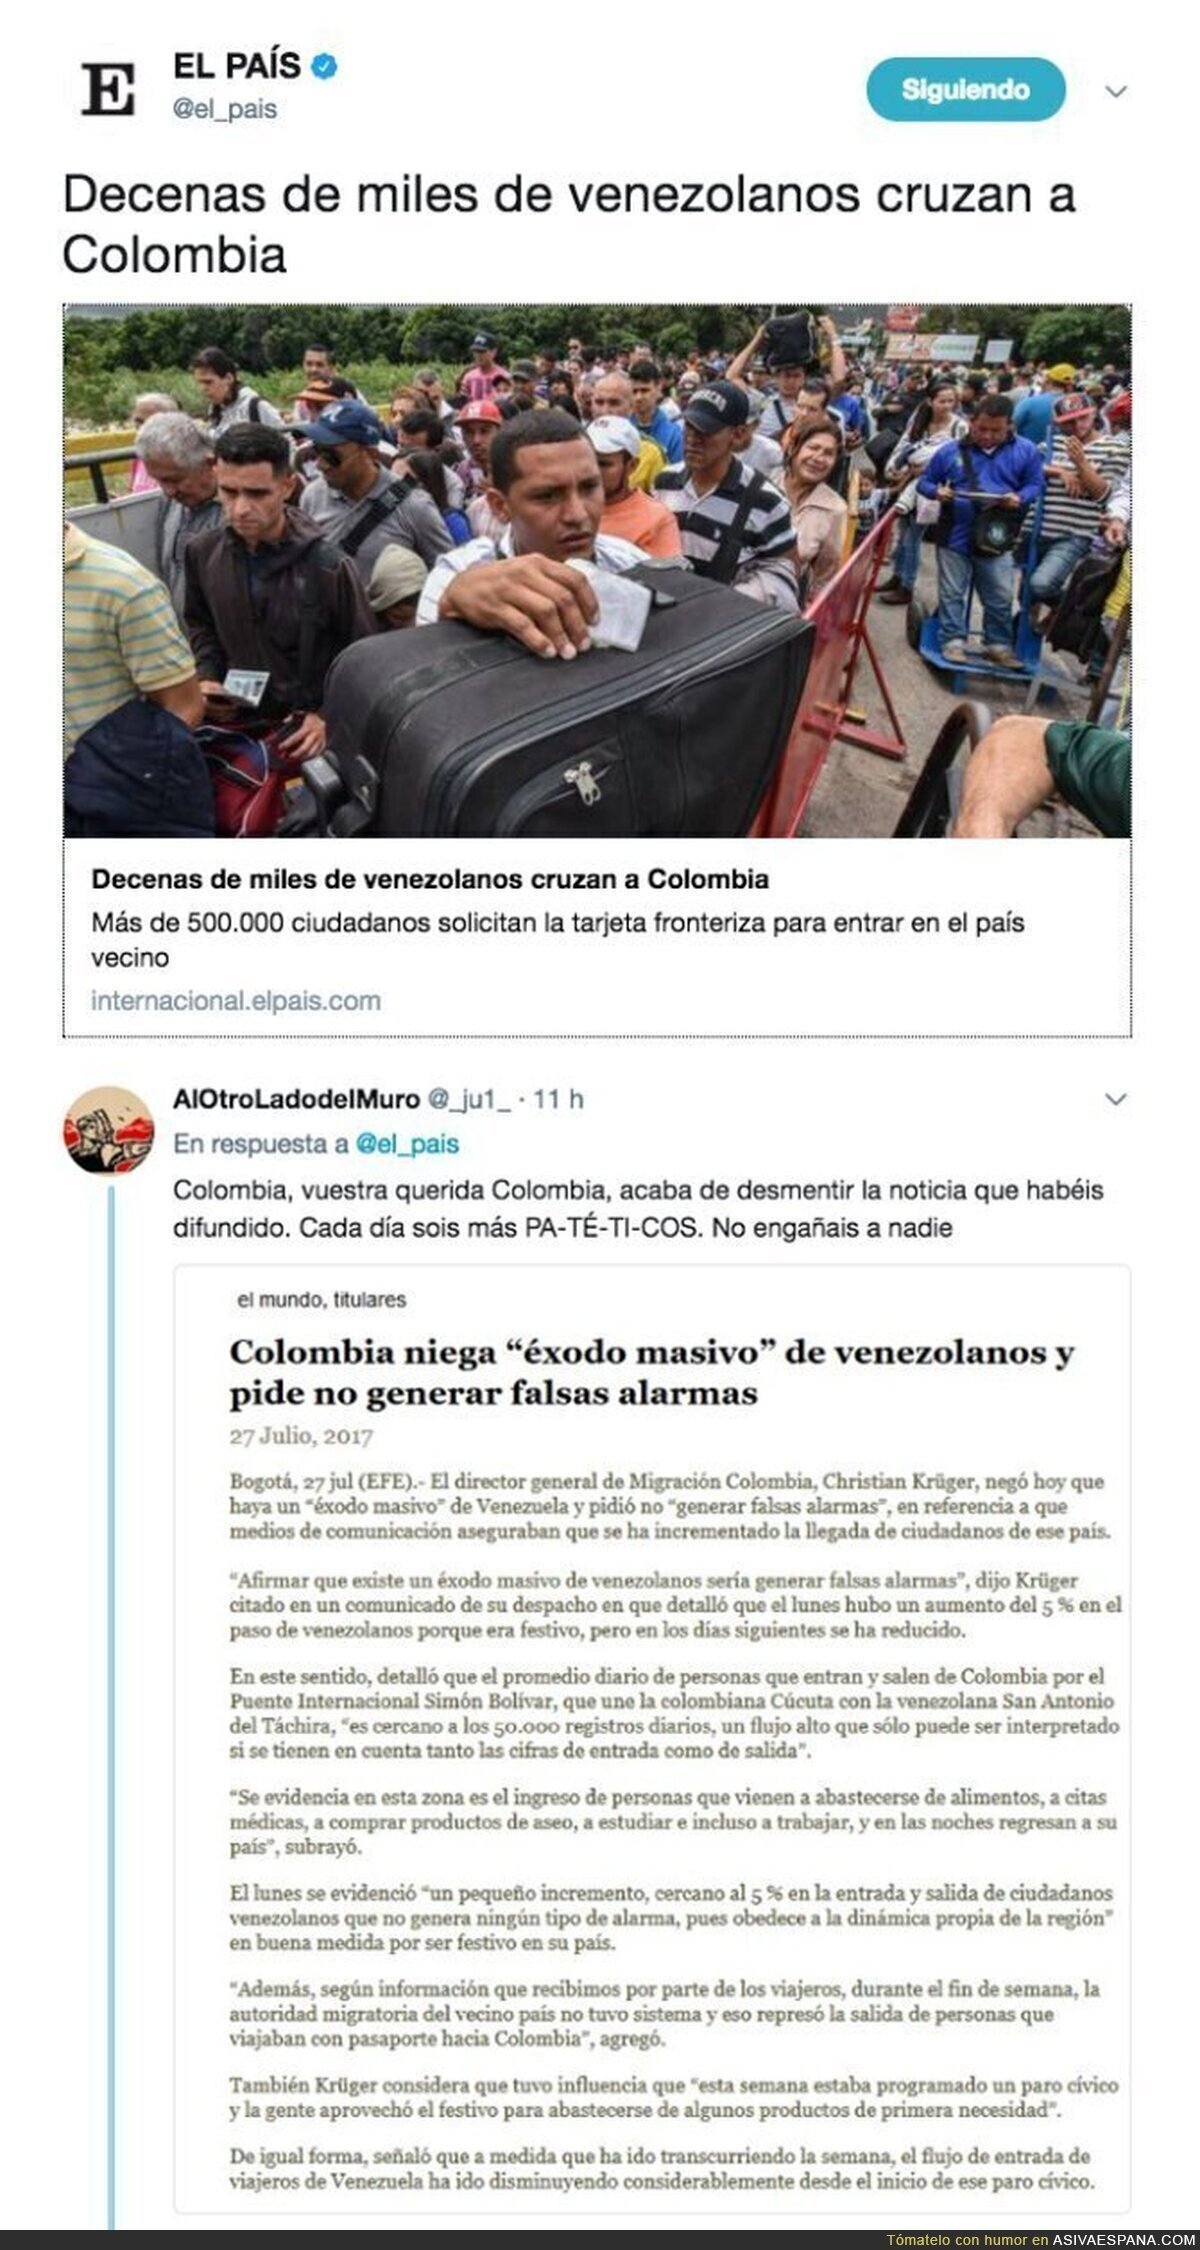 Colombia desmiente a "El País" diciendo que miles de venezolanos están cruzando para Colombia